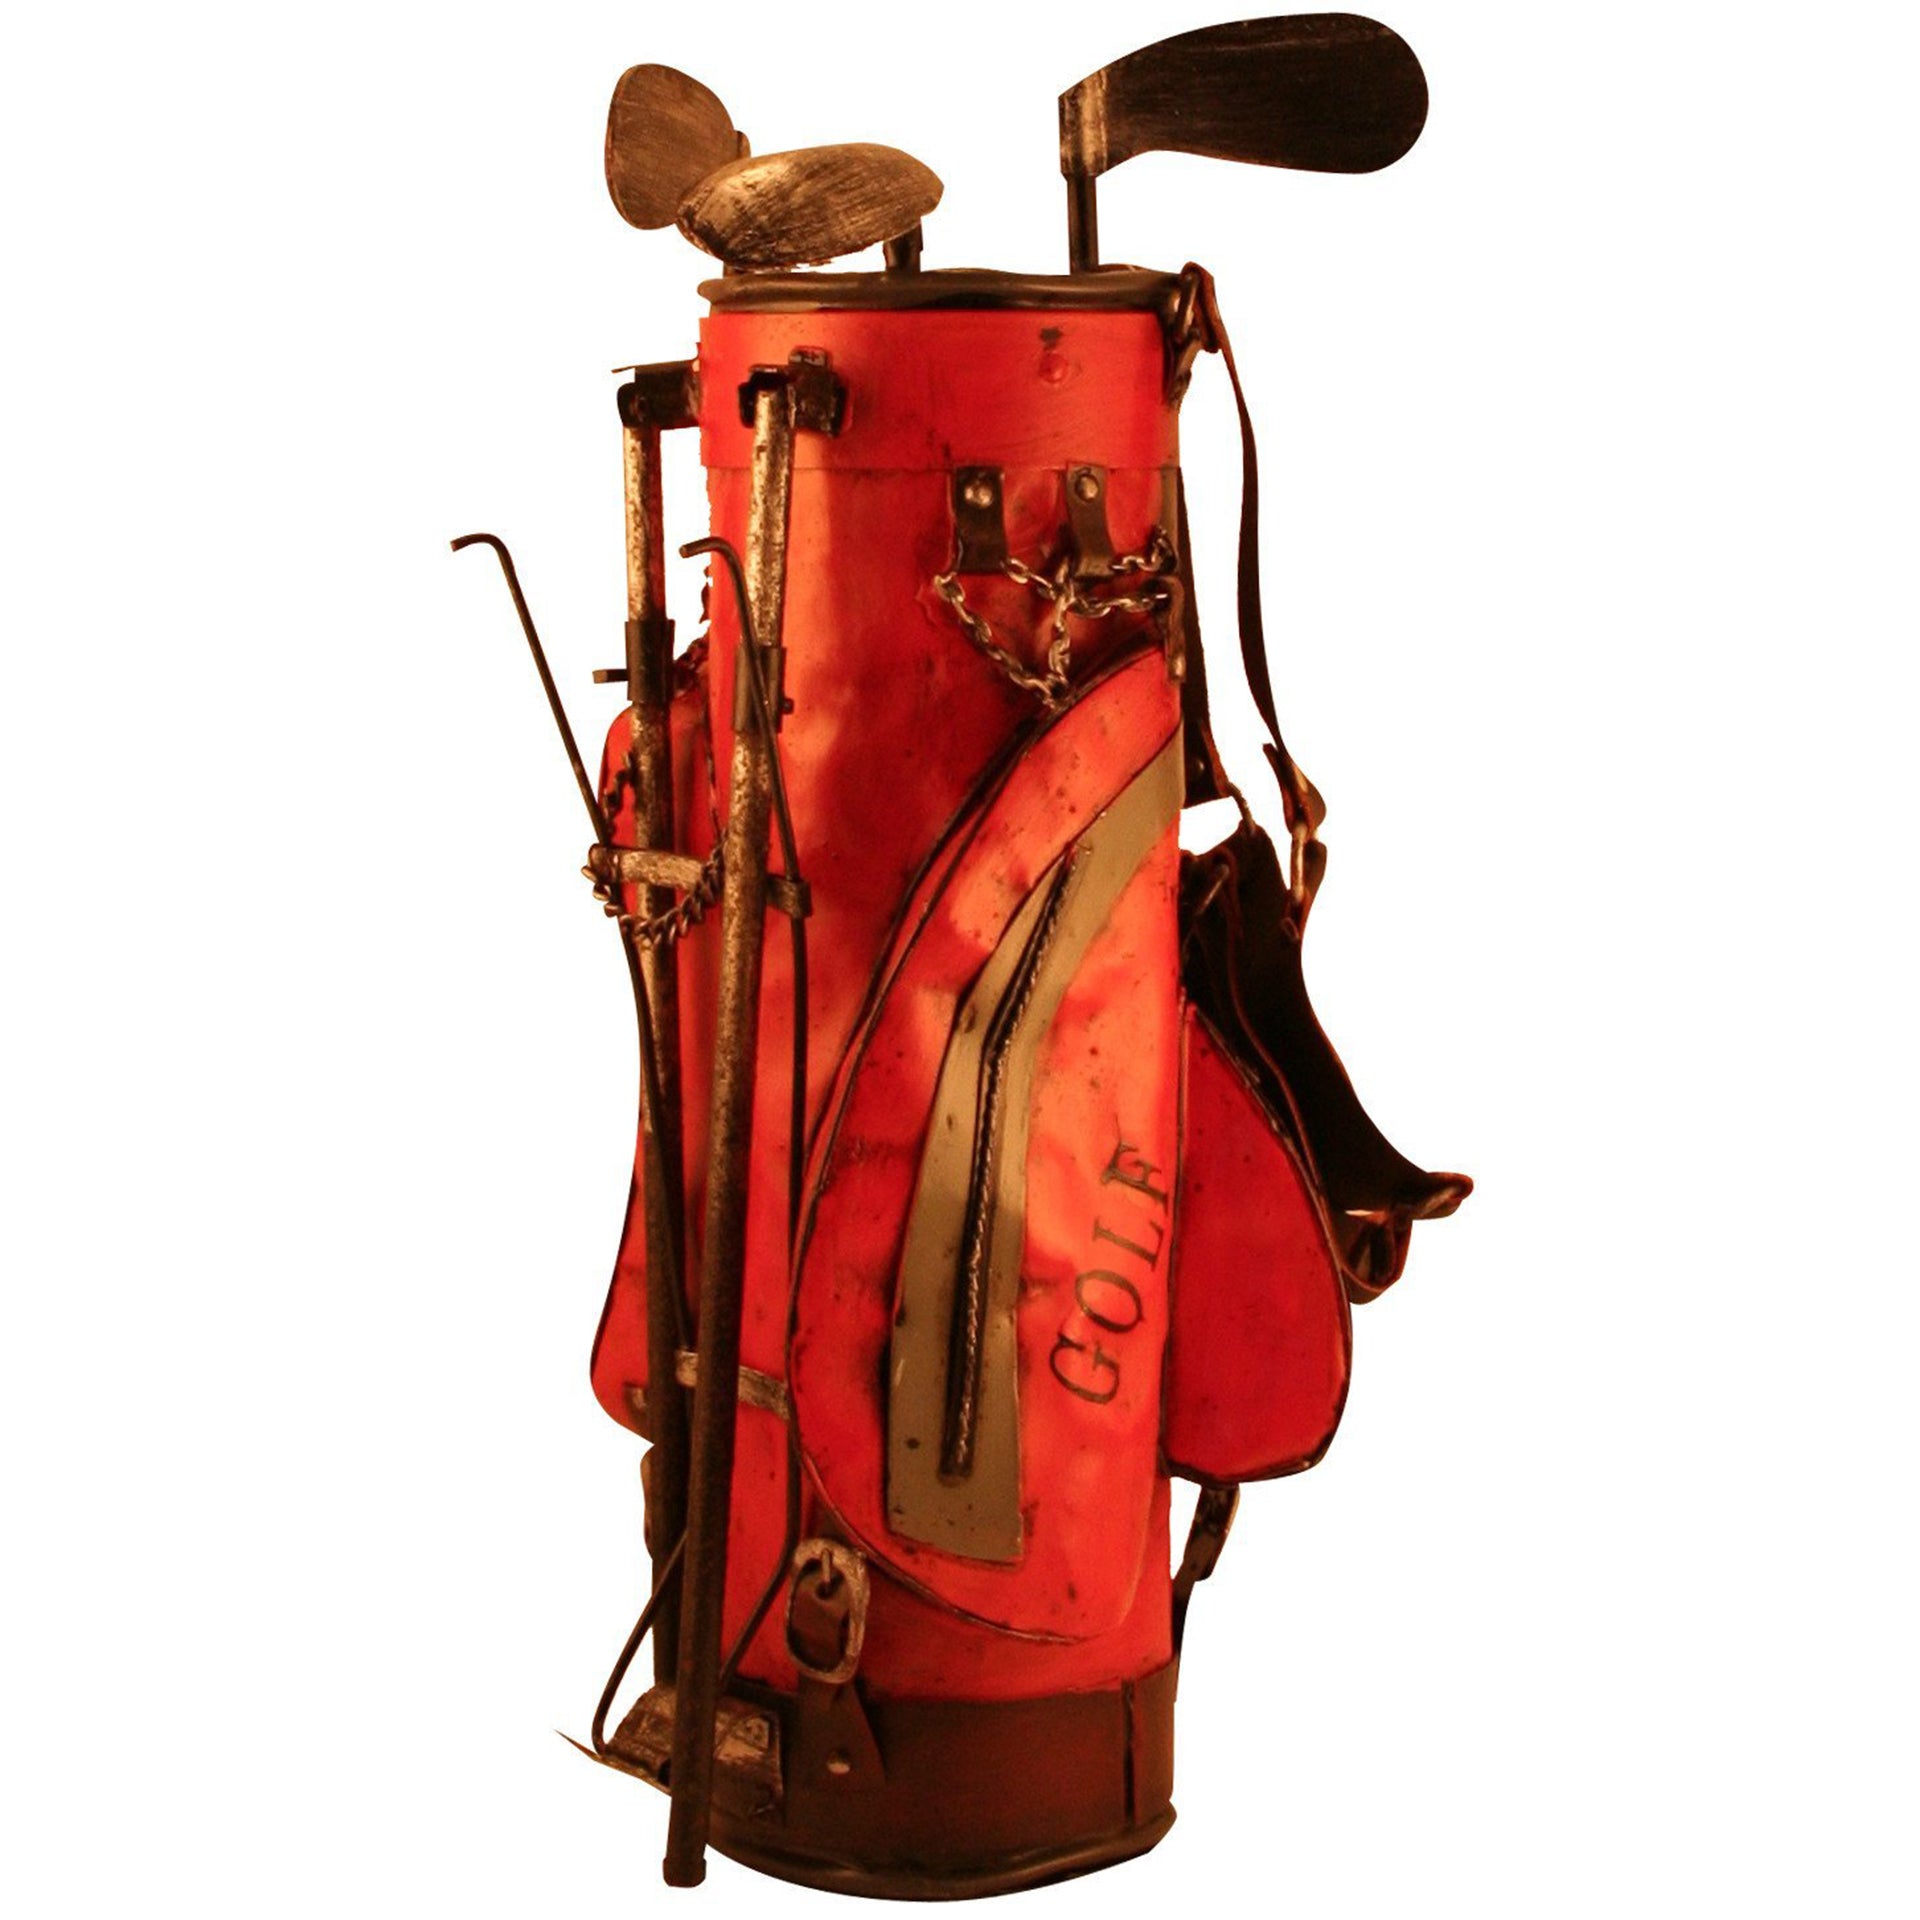 vintage golf bags